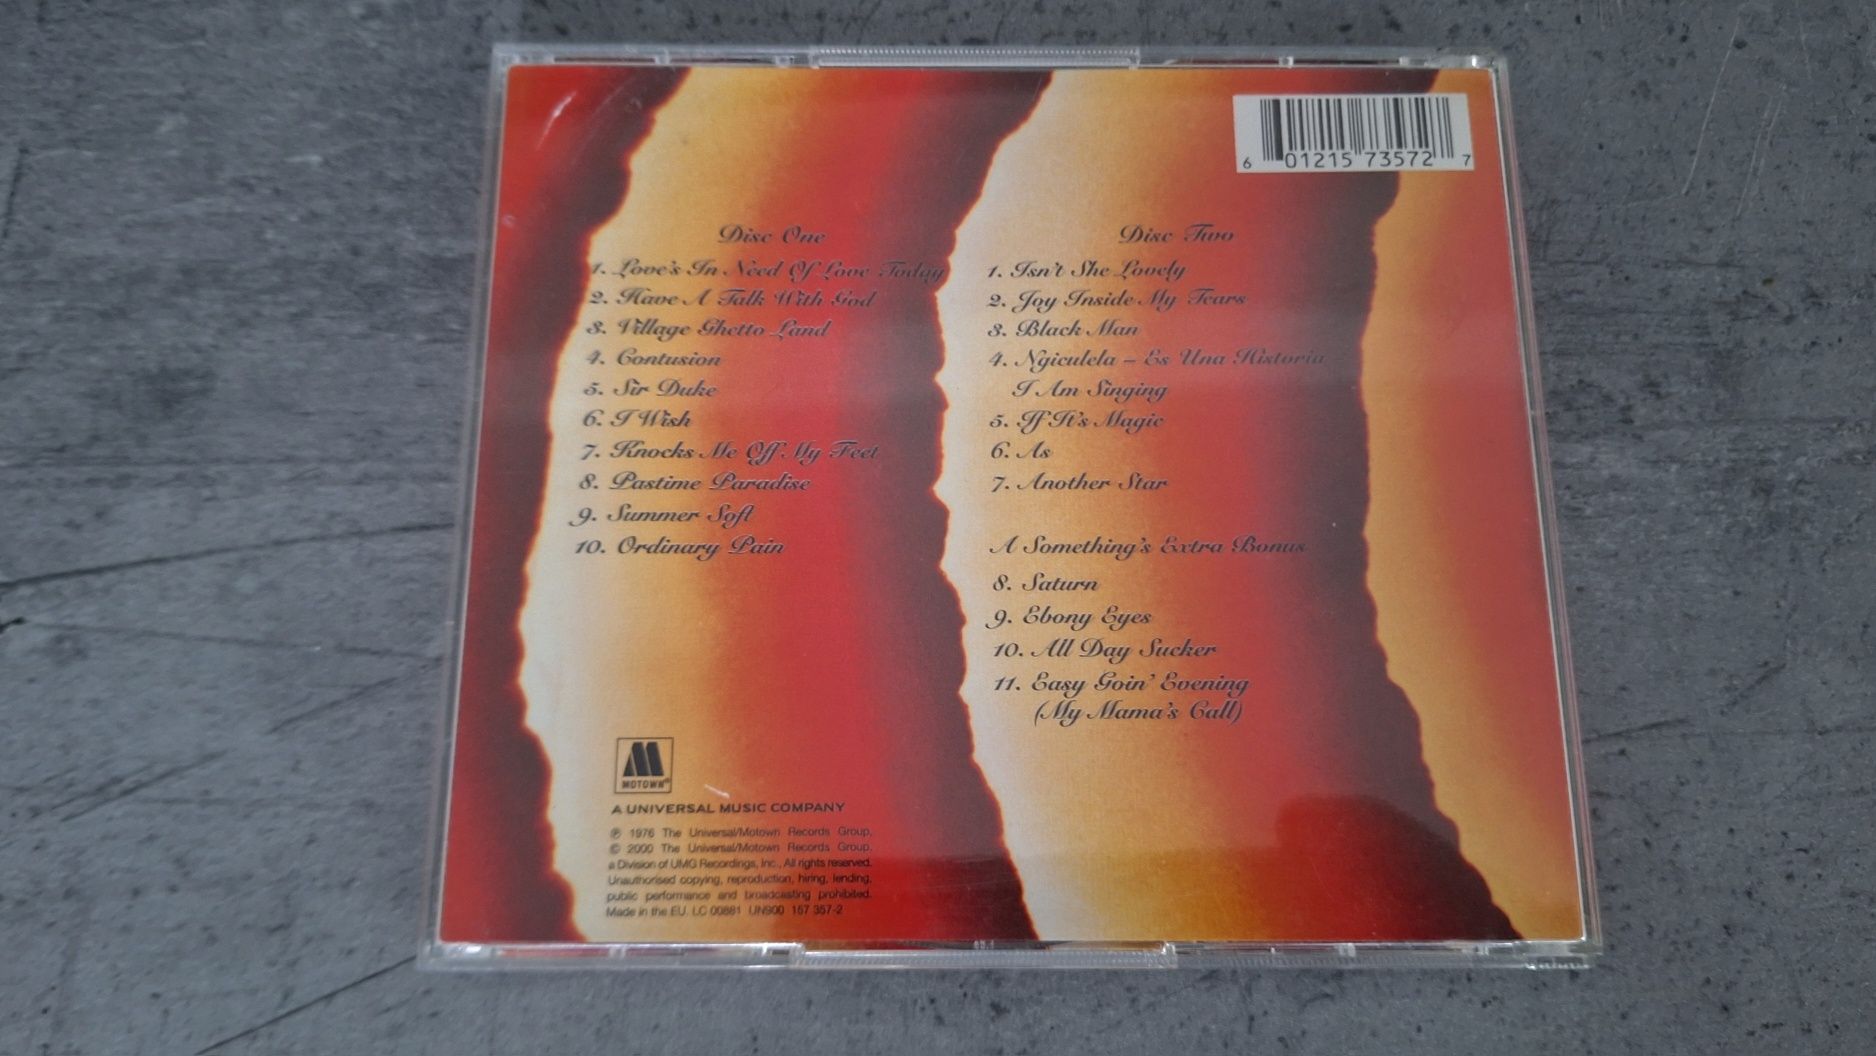 Stevie Wonder-Songs In The Key of Life 24-bit CD